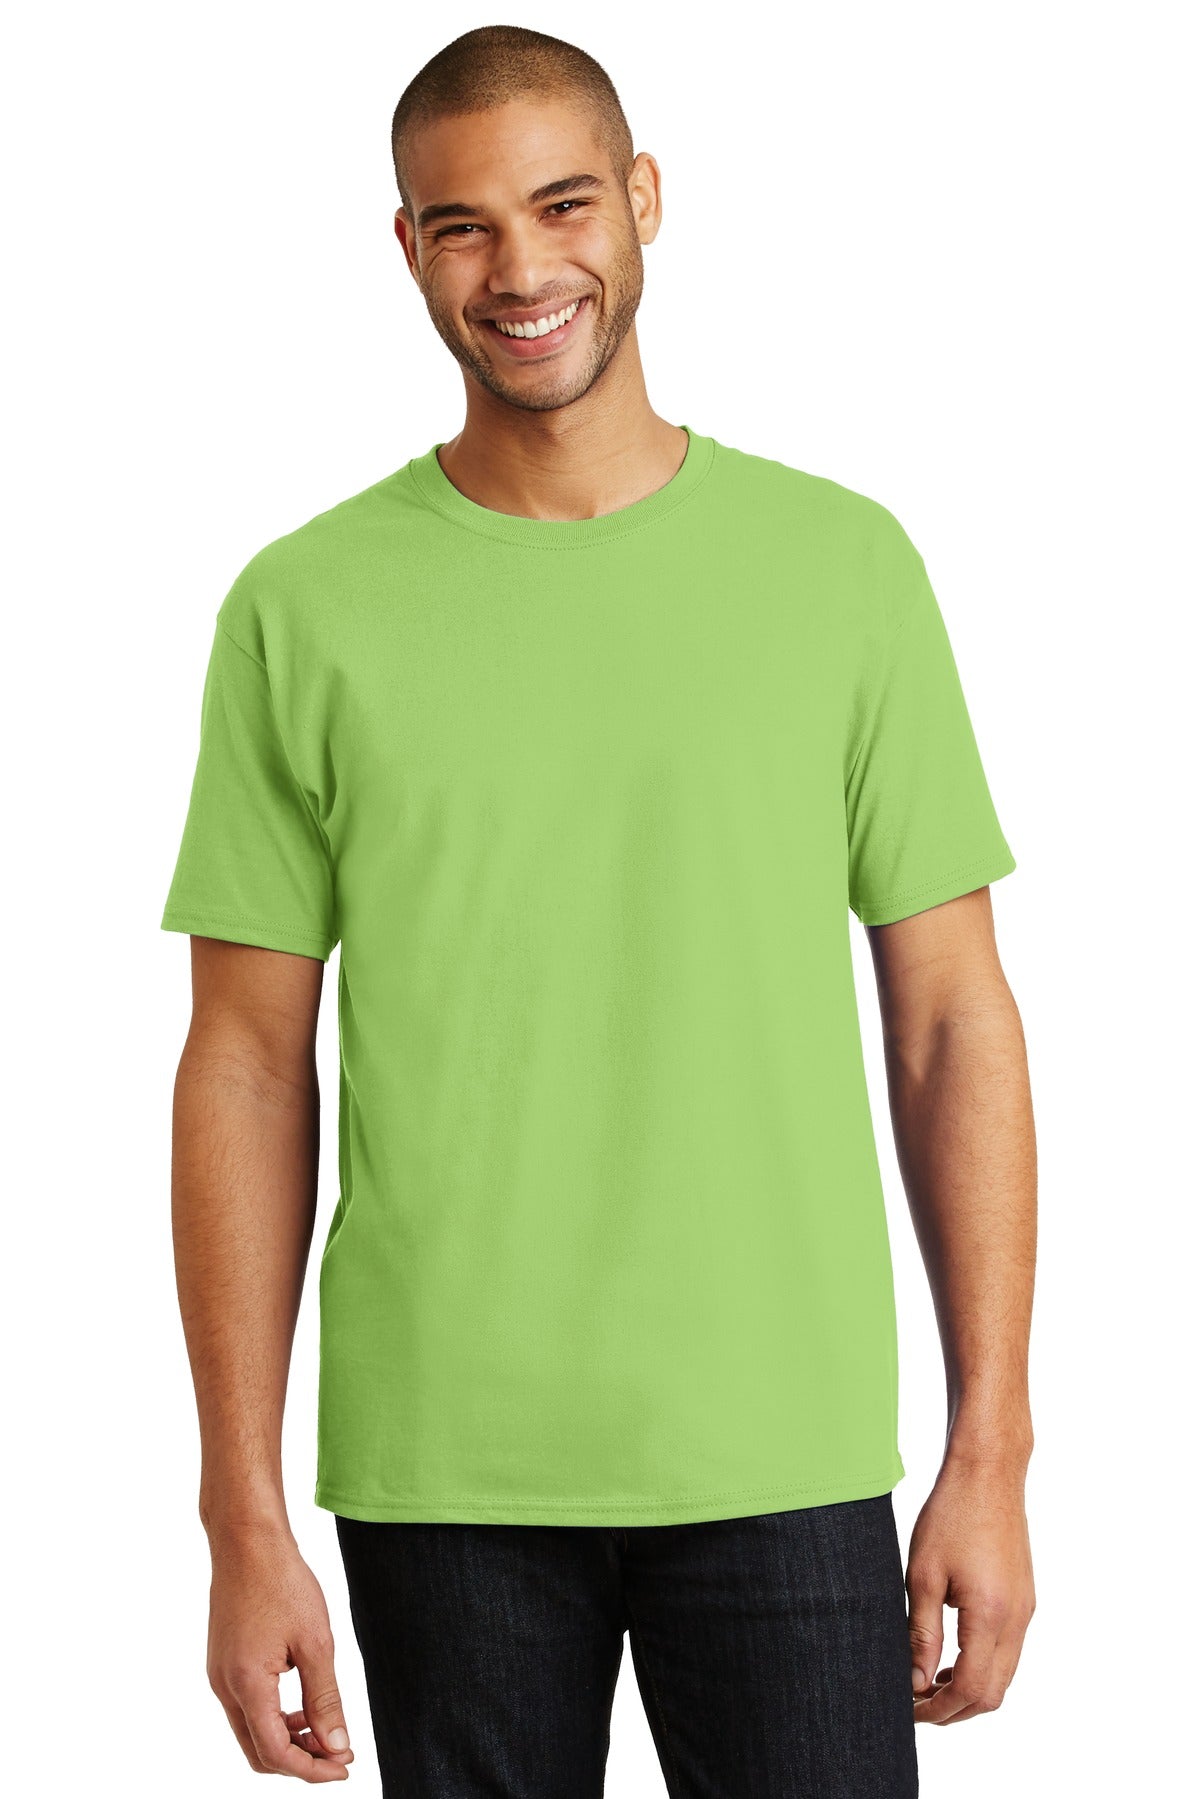 Hanes® - Authentic 100% Cotton T-Shirt. 5250 [Lime] - DFW Impression